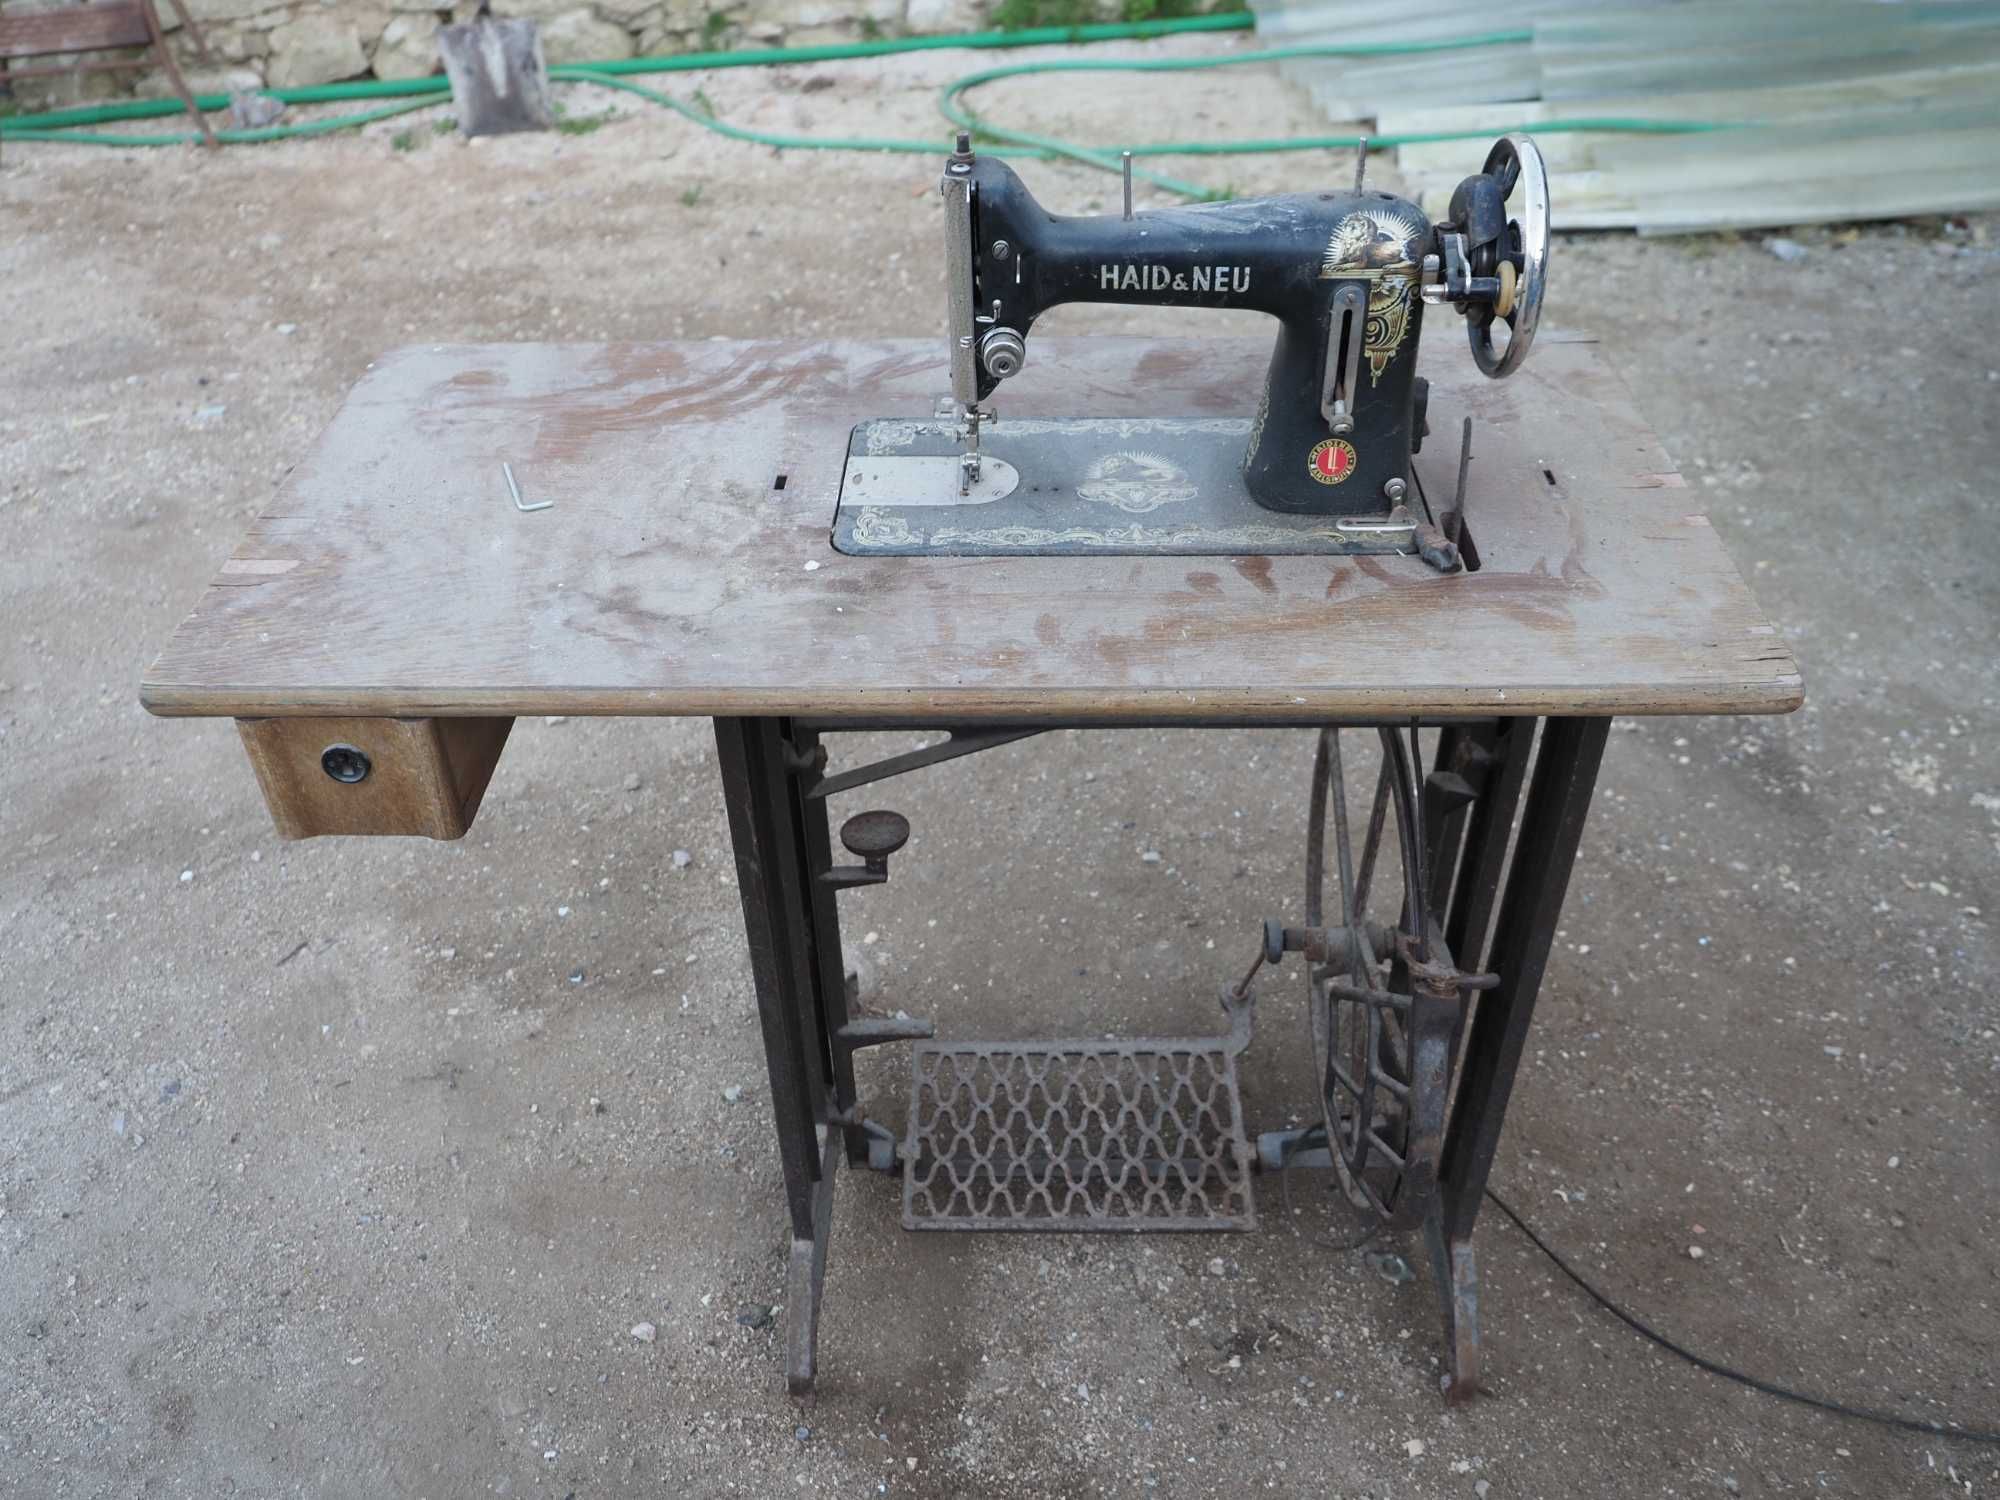 Maquina de costura antiga - Haid & Neu